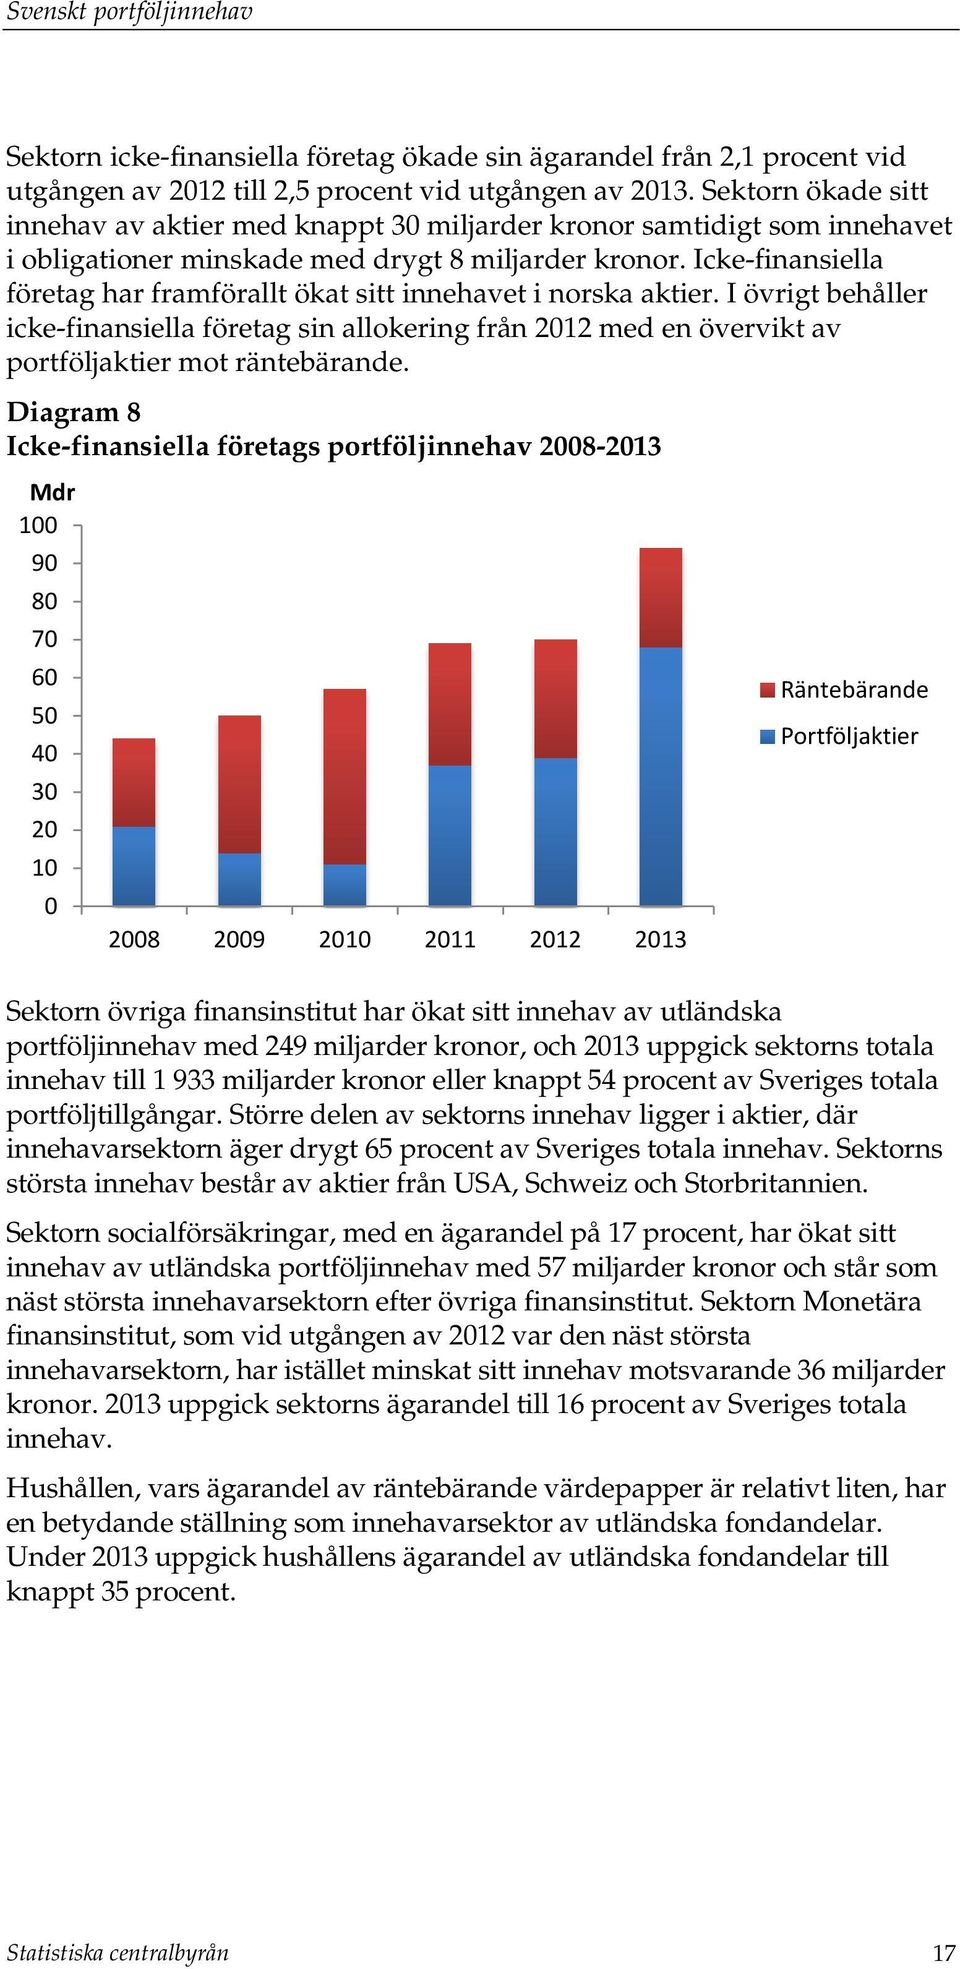 Icke-finansiella företag har framförallt ökat sitt innehavet i norska aktier. I övrigt behåller icke-finansiella företag sin allokering från 2012 med en övervikt av portföljaktier mot räntebärande.